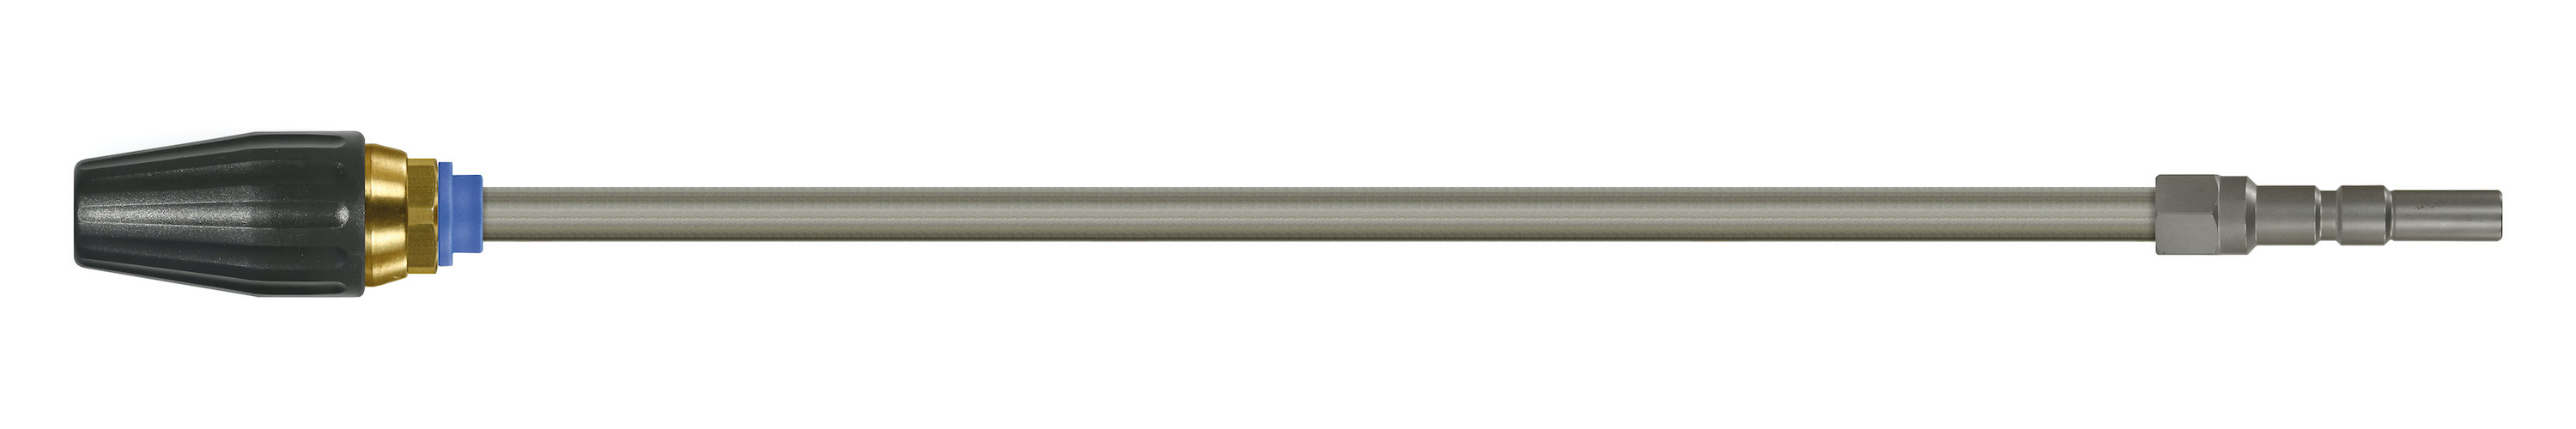 Coupleur KW. Lances tube zingué avec rotabuse ST-357.1. Cône 20°. 100 - 250 bar. Max. 100 °C, Calibre 045.